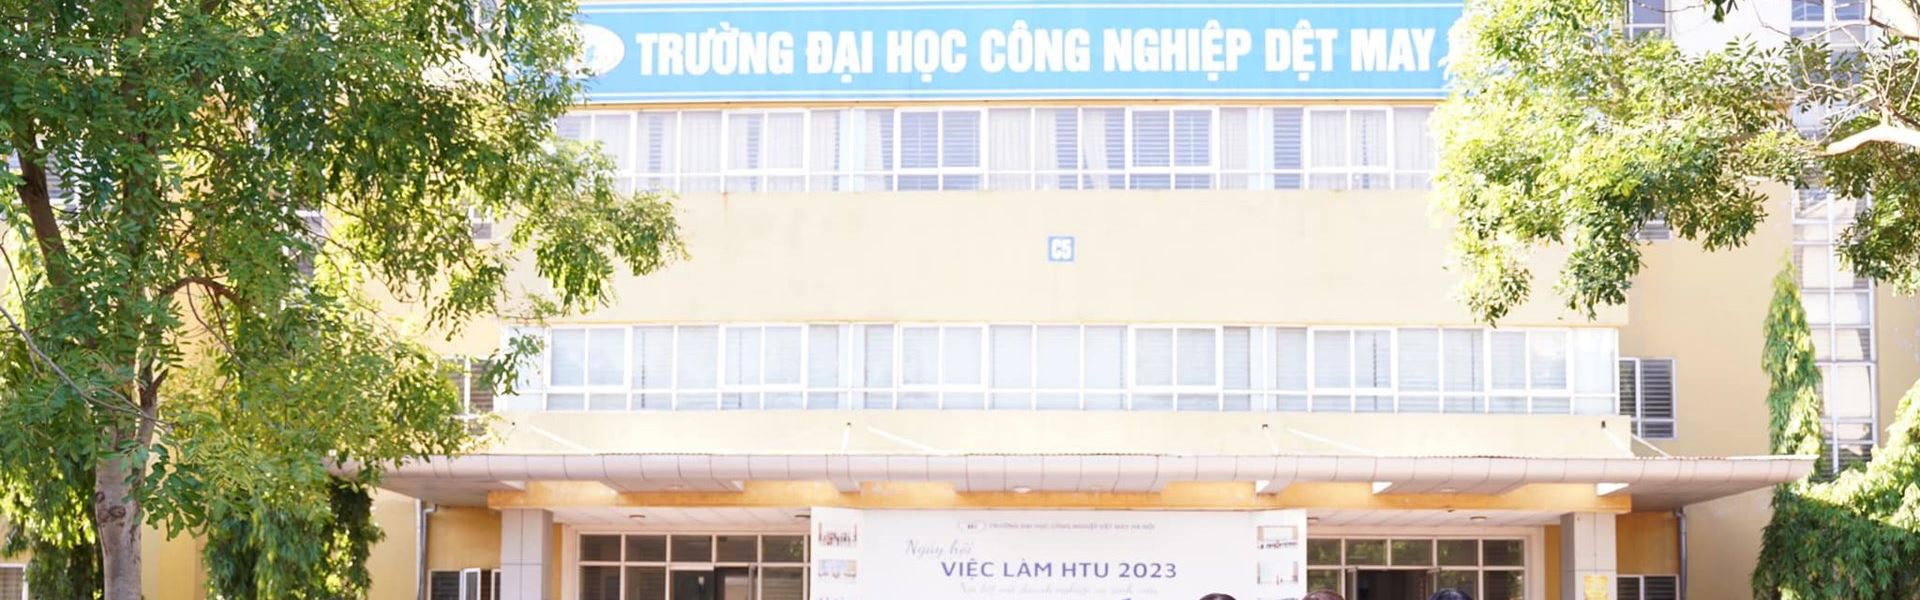 Đại học Công nghiệp Dệt may Hà Nội